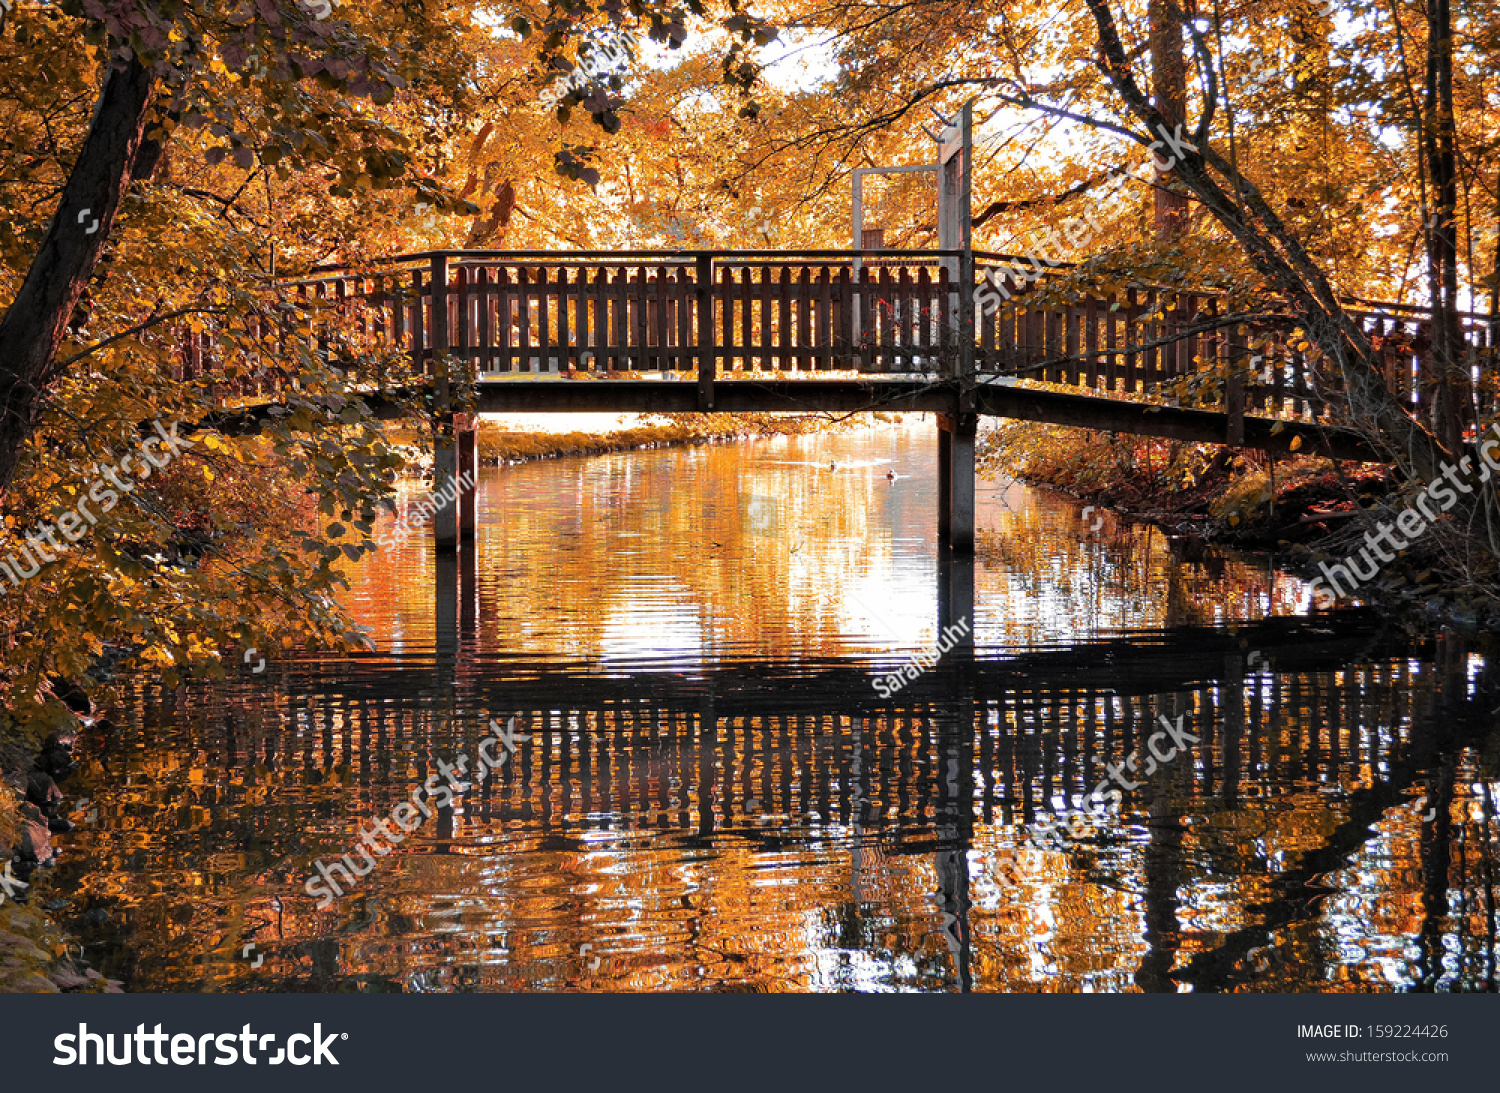 Bridge Stock Photo 159224426 : Shutterstock